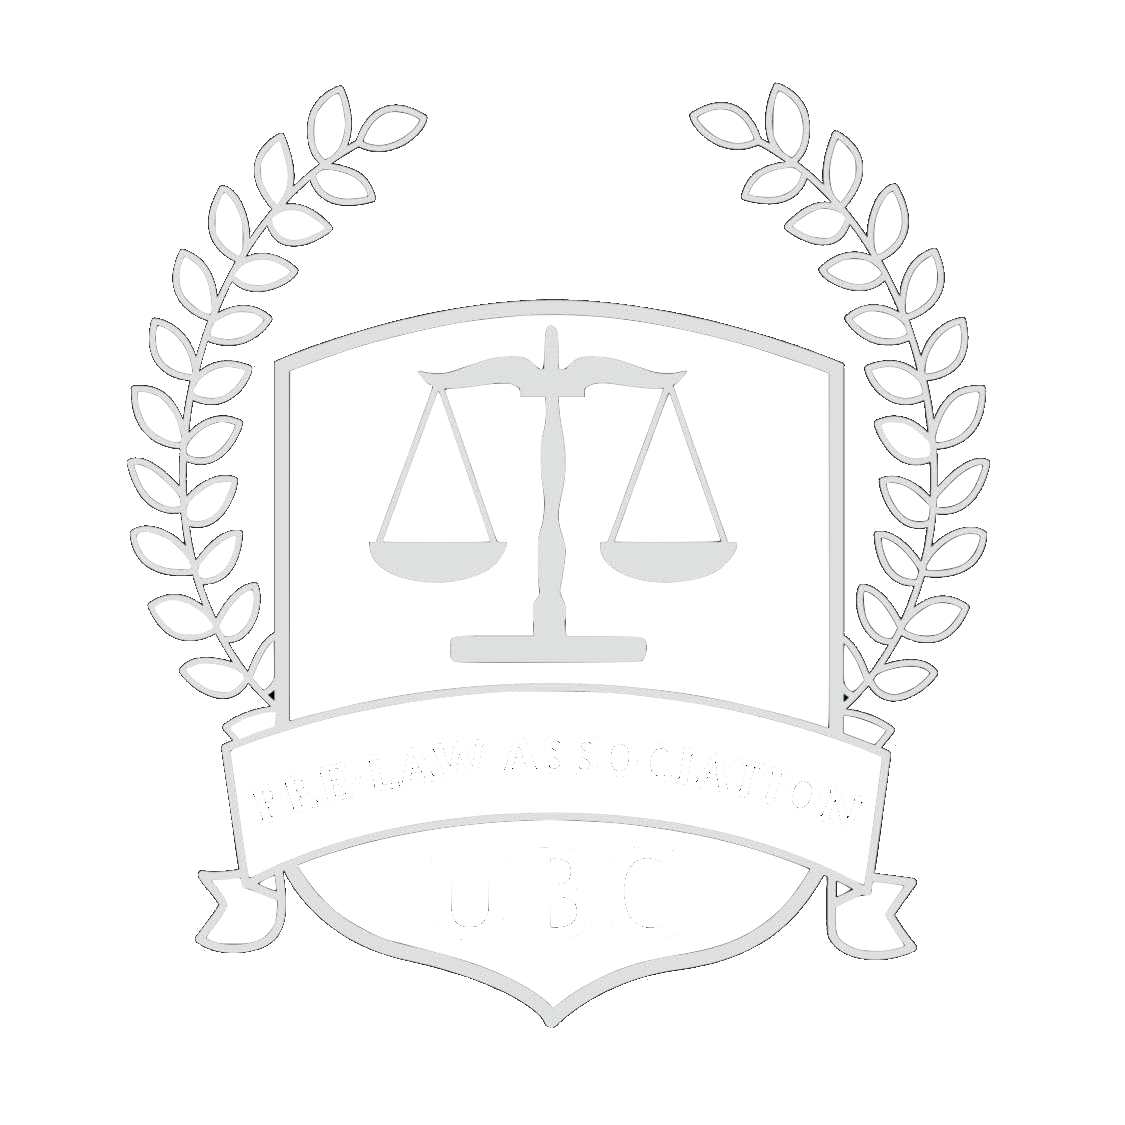 UBC Pre-Law Association